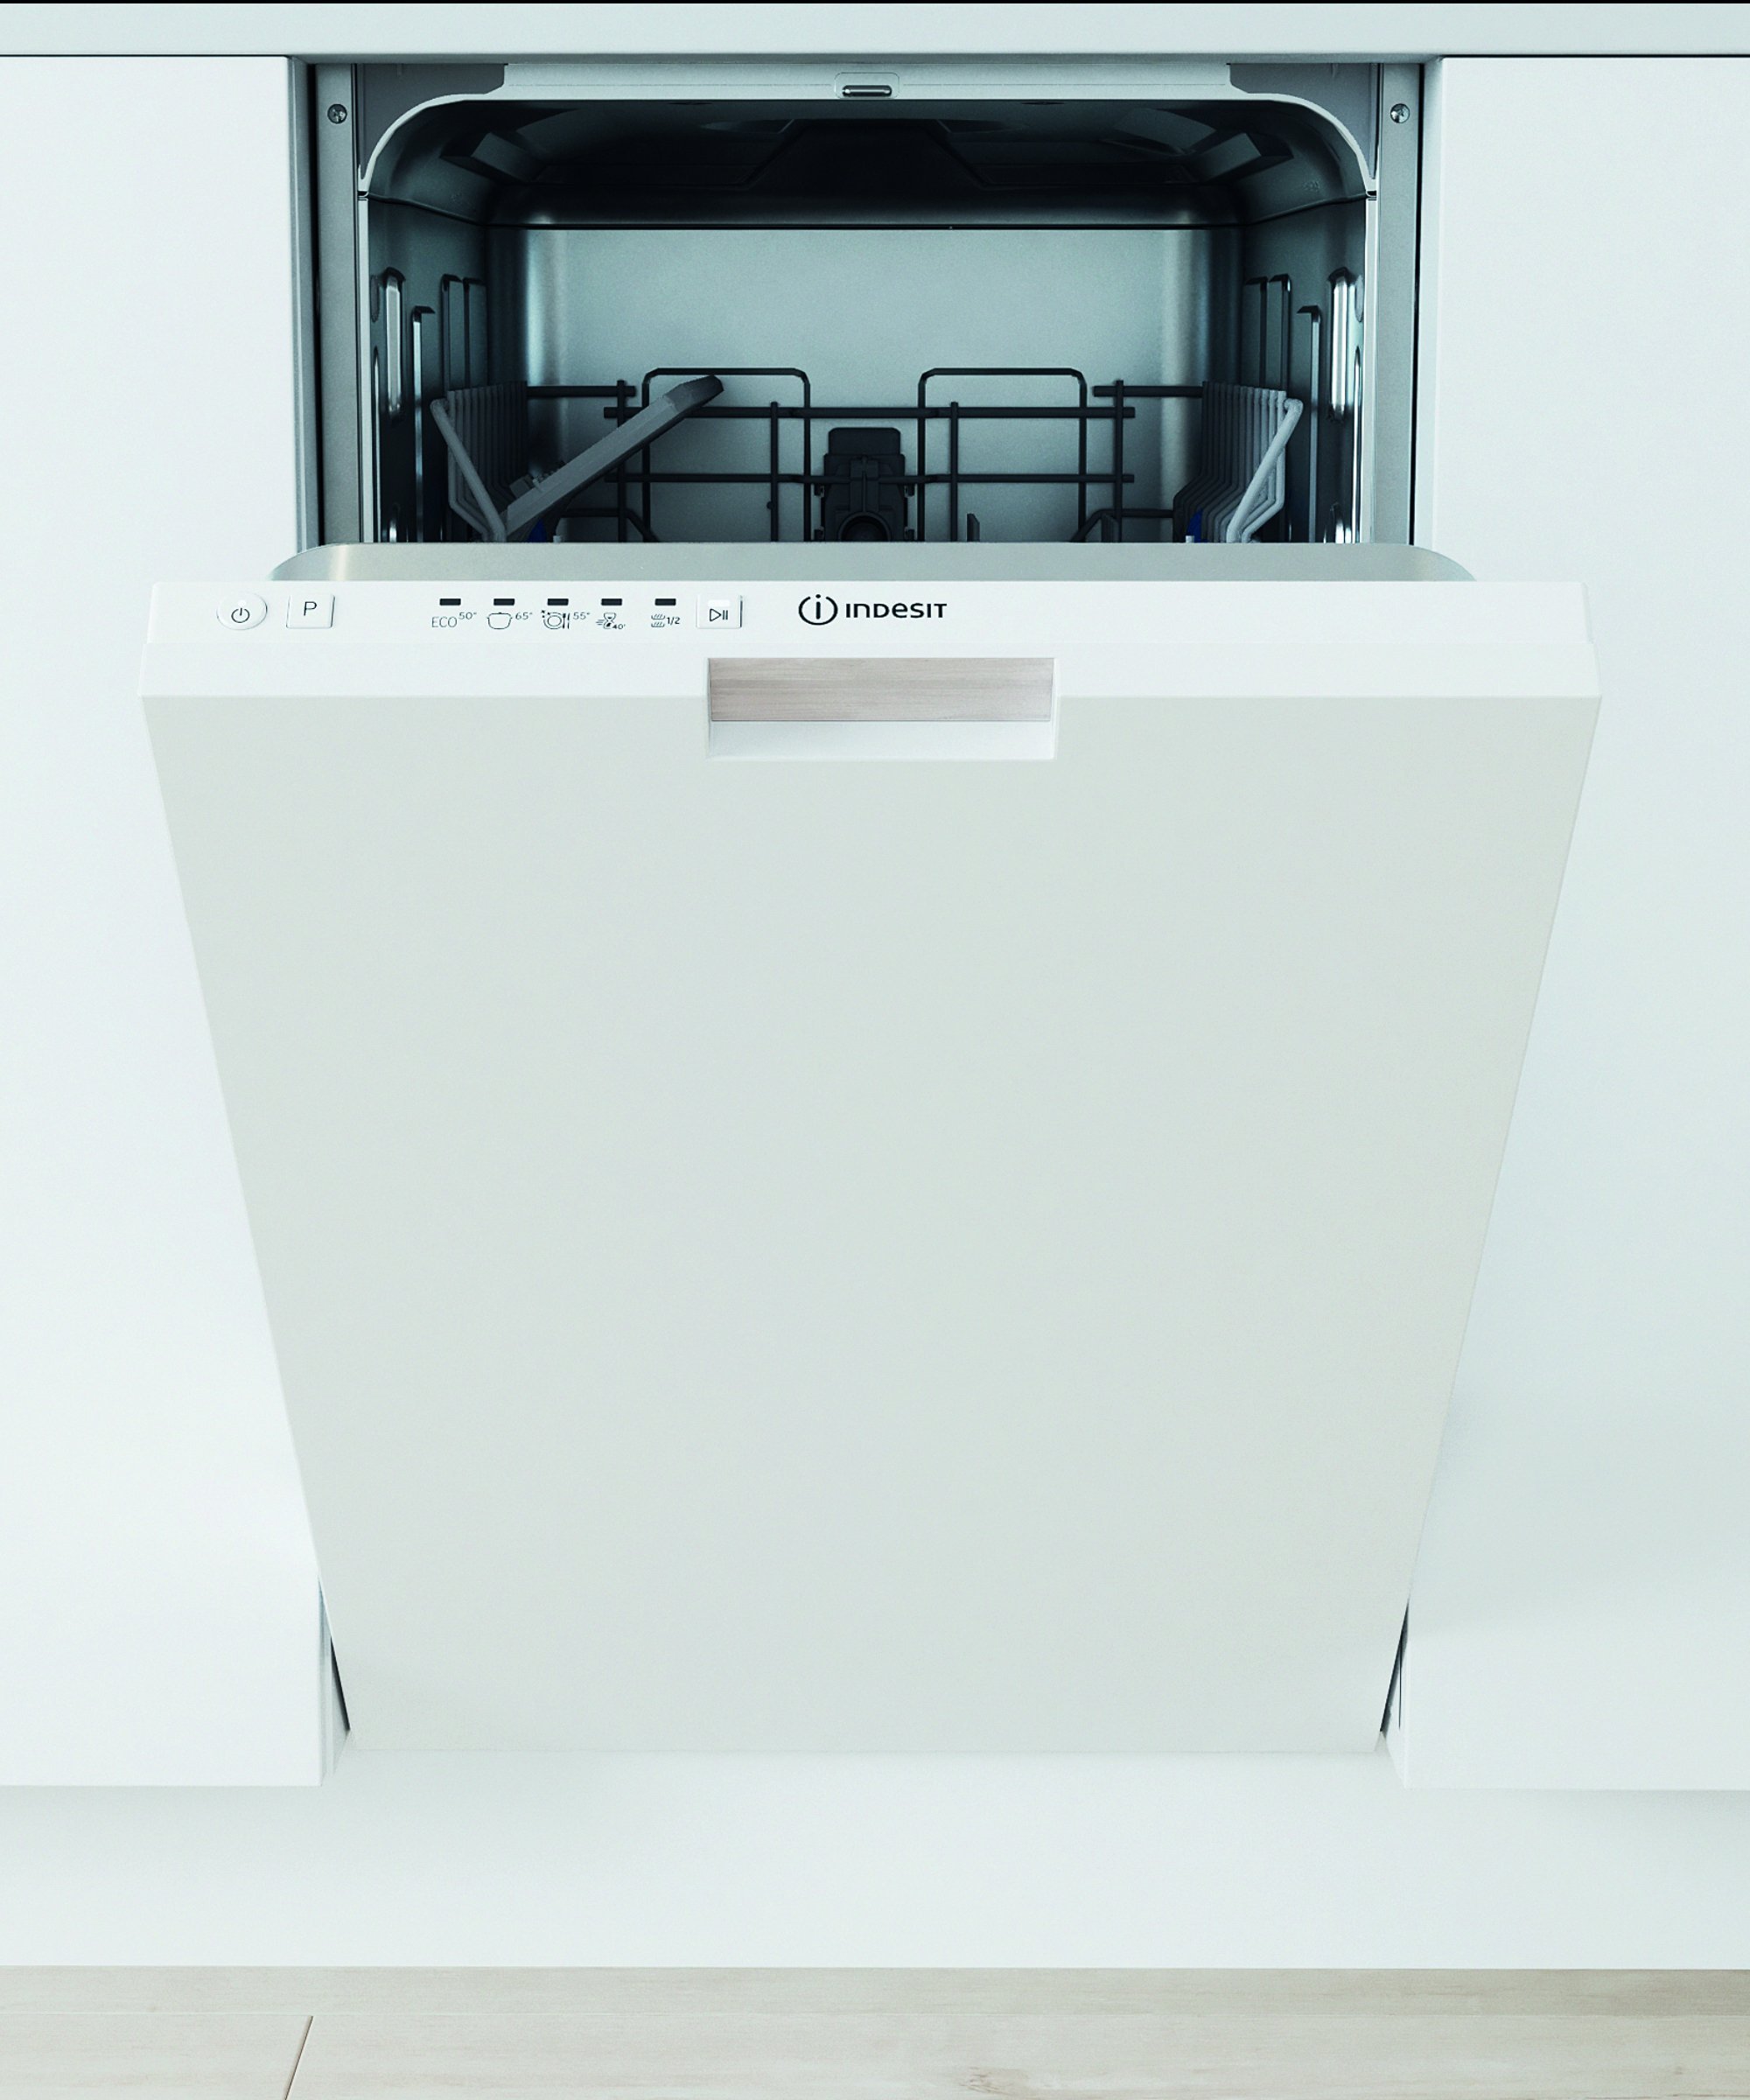 Masini de spalat vase incorporabile - Mașină de spălat vase încorporată Indesit DI9E 2B10, 9 locuri. 45 cm, F